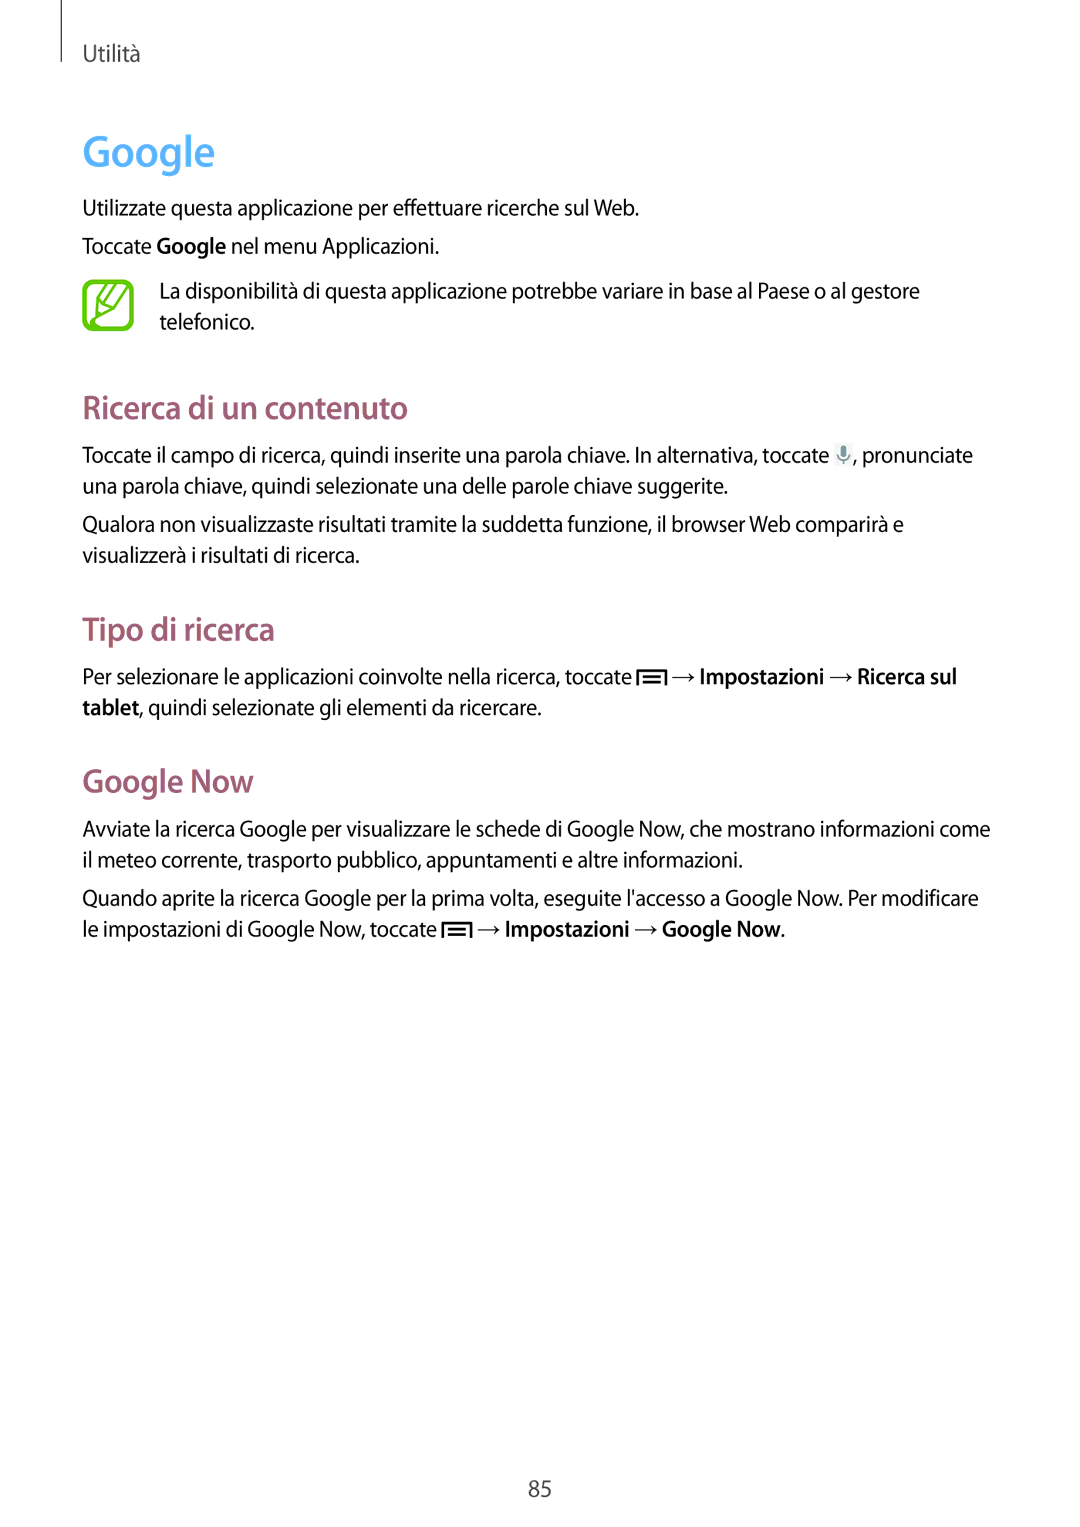 Samsung GT-P5220ZWATIM manual Ricerca di un contenuto, Tipo di ricerca, Google Now 